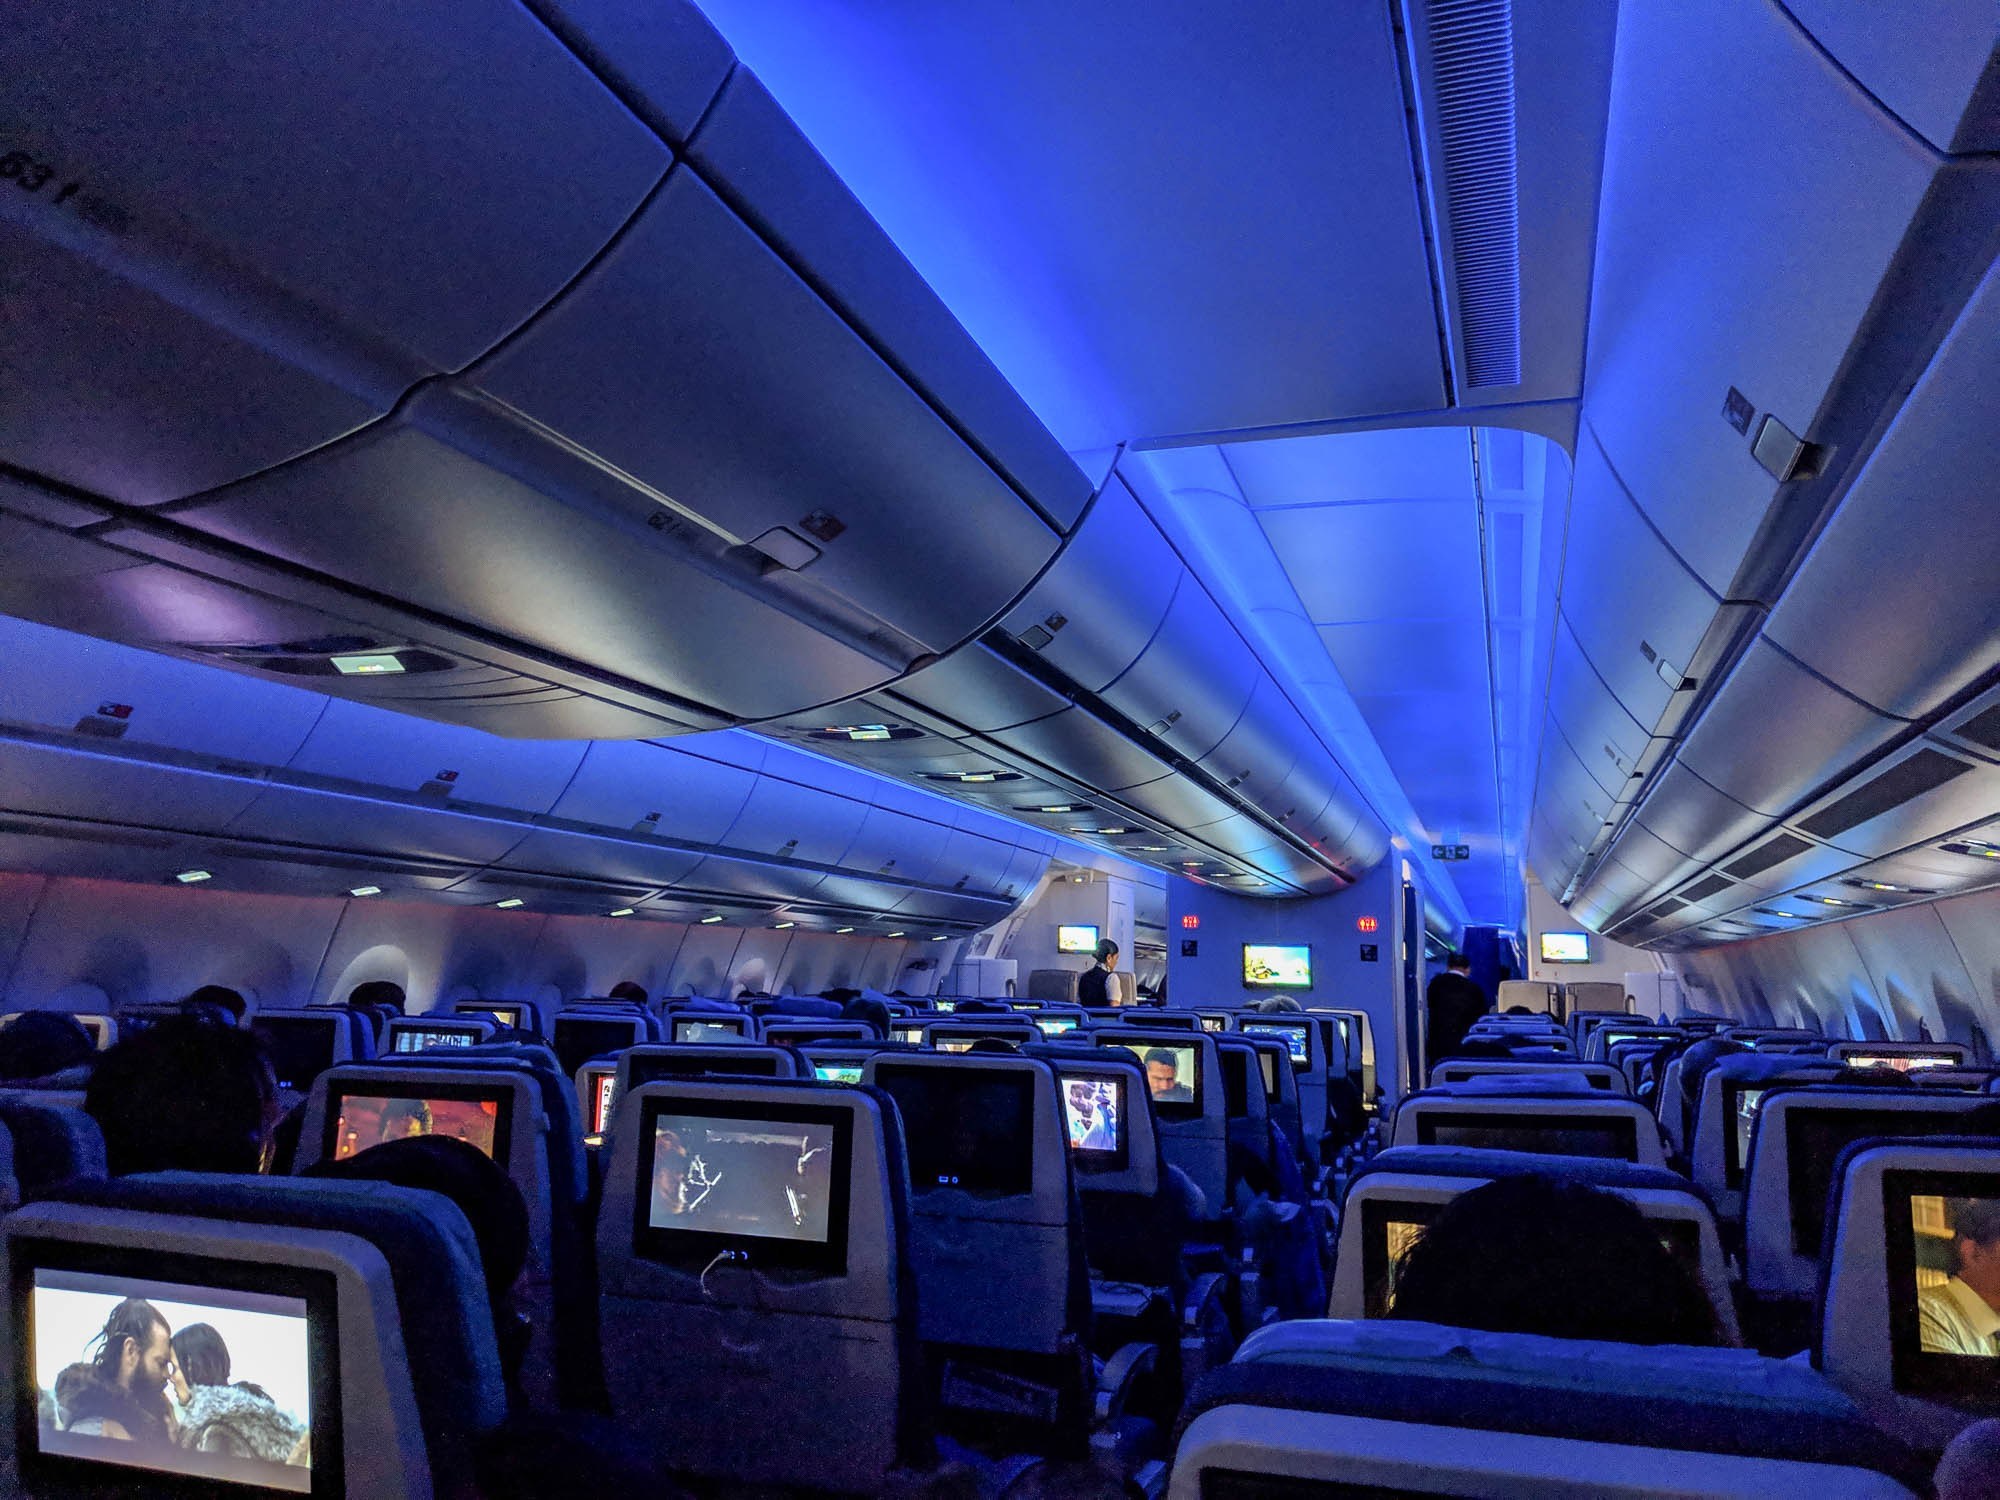 Vé máy bay chỉ 79 USD: Cơ hội đi khắp thế giới với chương trình khuyến mại ghế tối ưu của Philippine Airlines 2